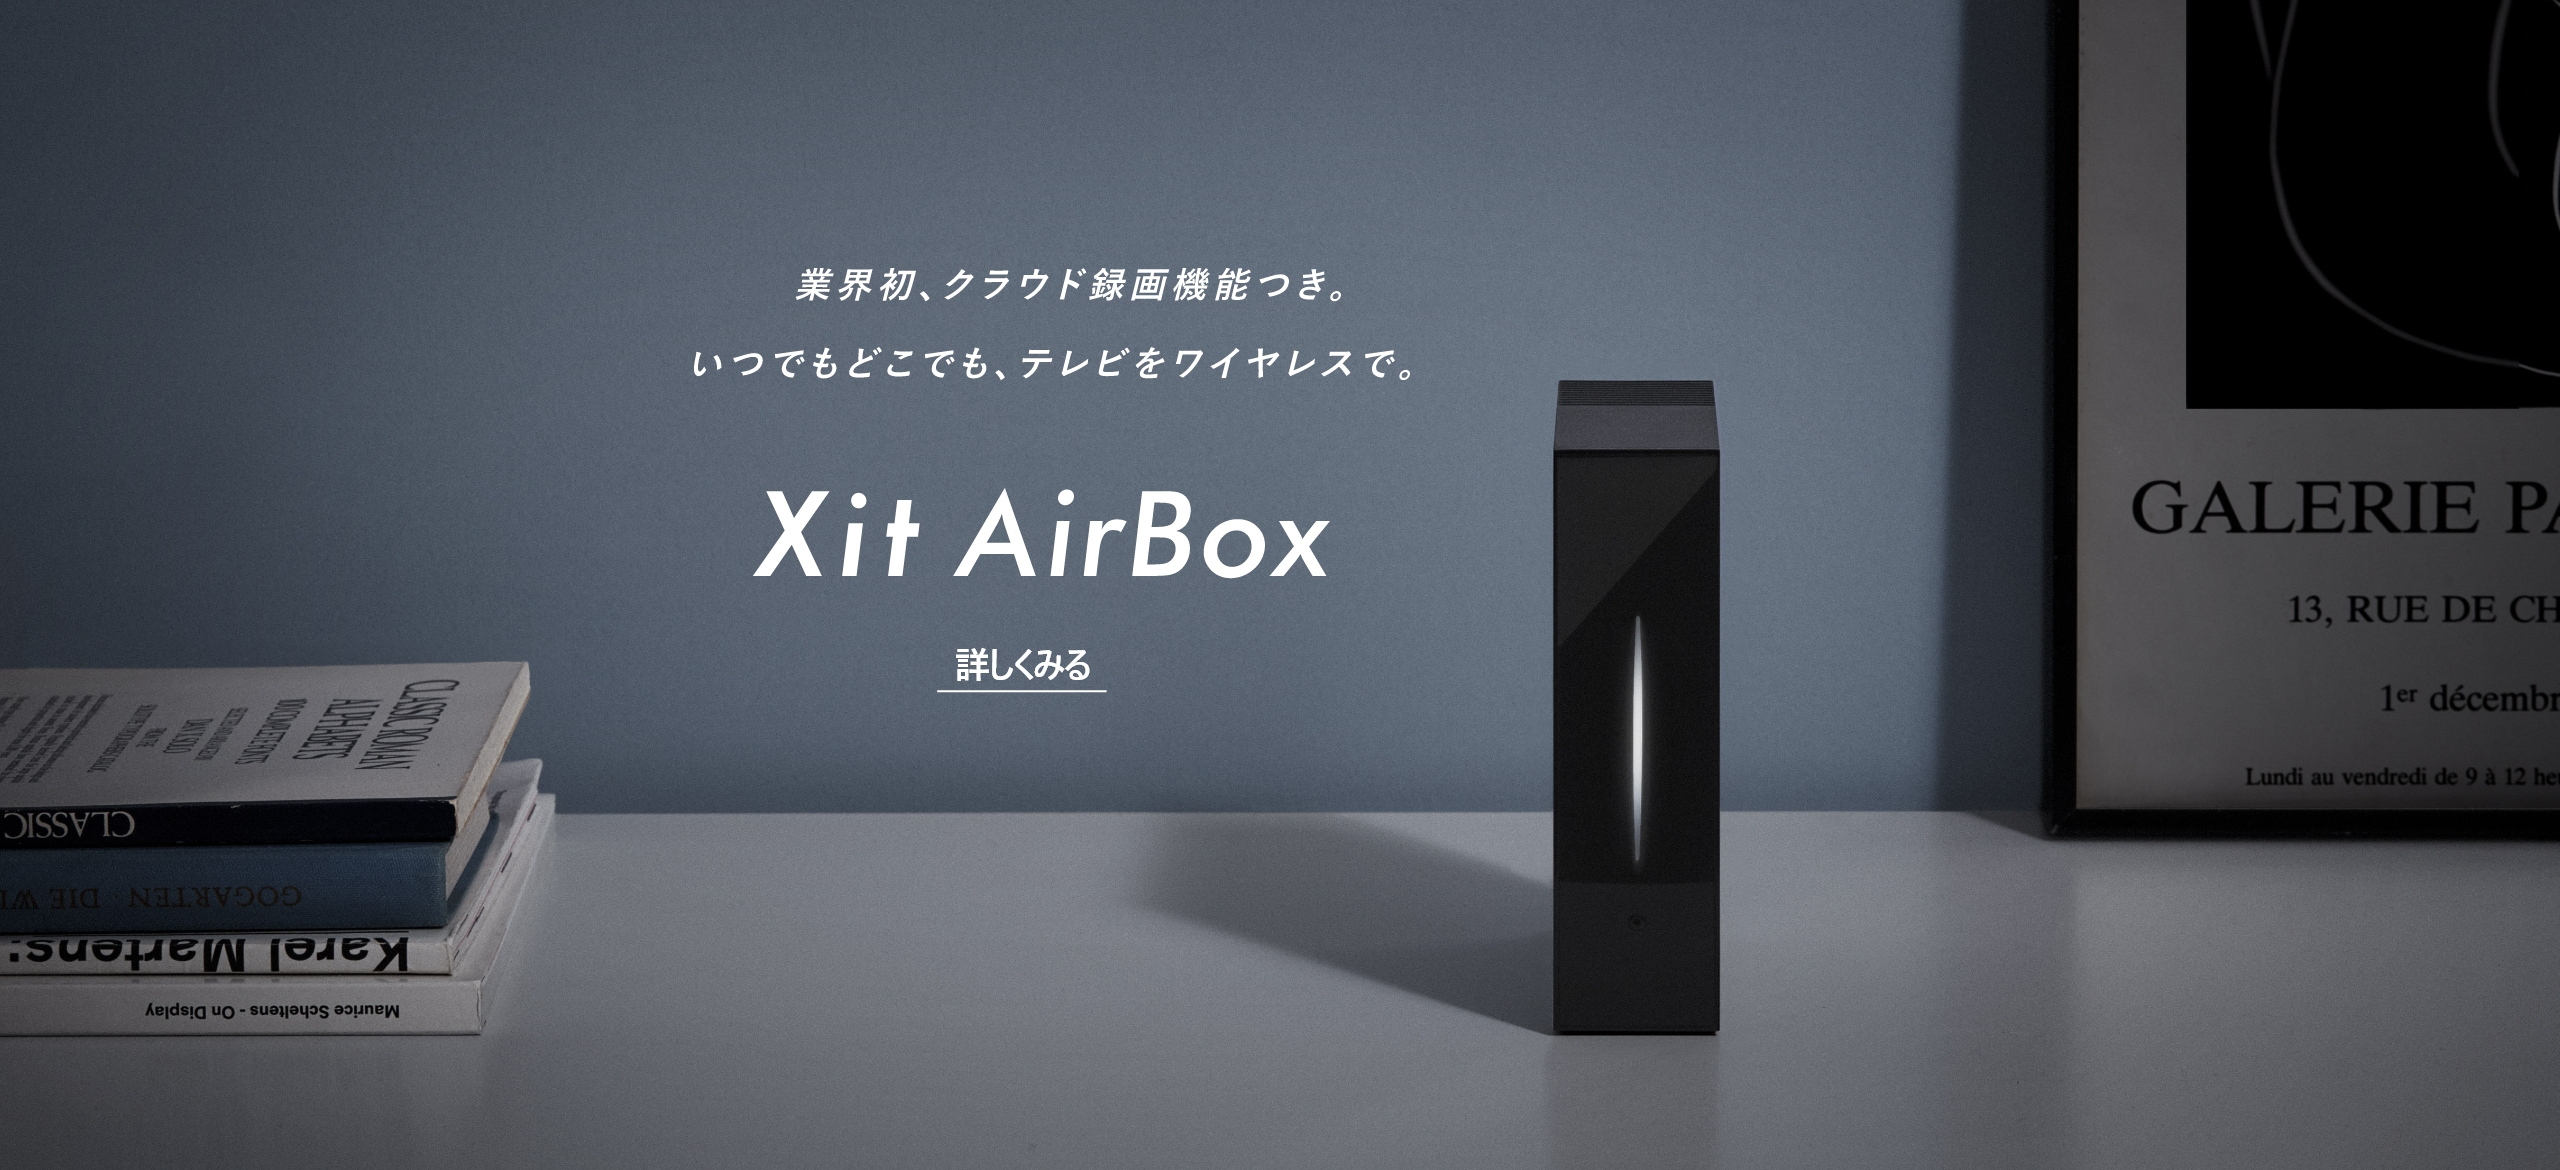 業界初、クラウド録画機能つき。いつでもどこでも、テレビをワイヤレスで。 Xit AirBox